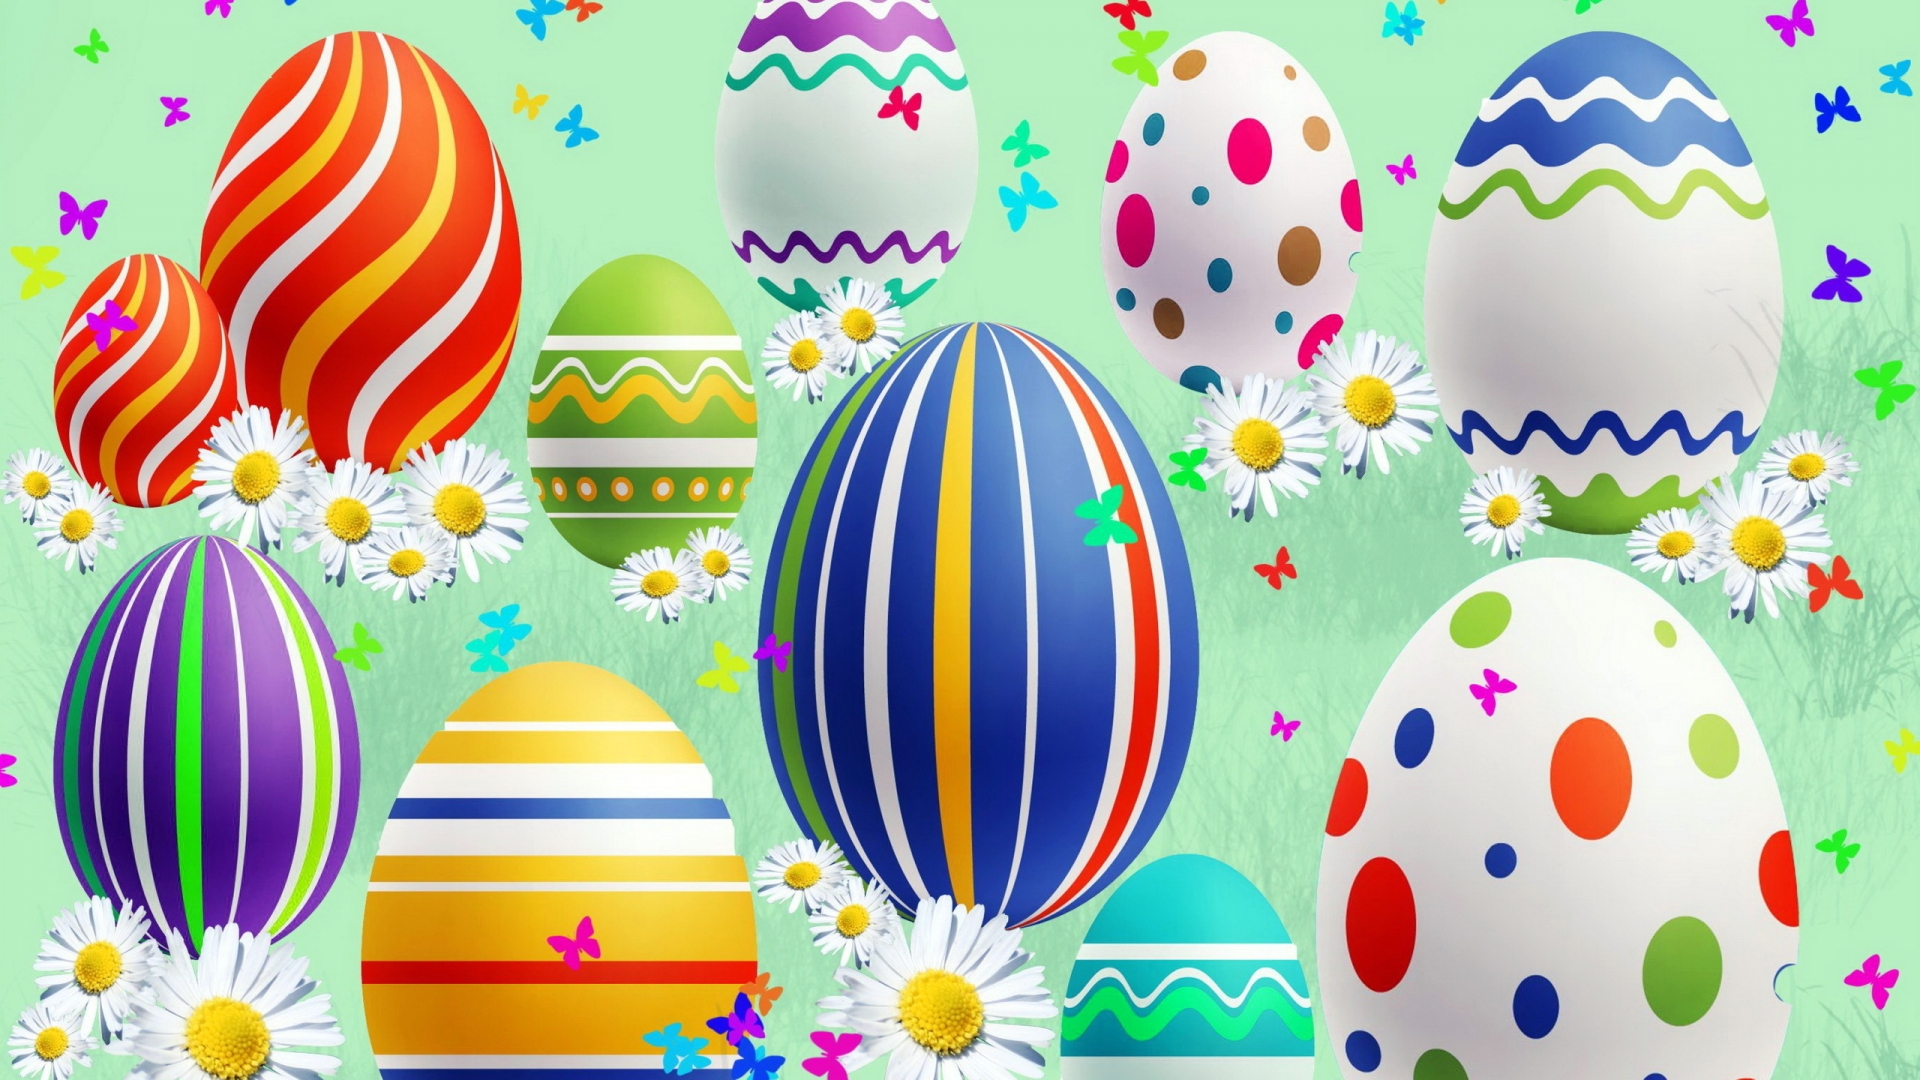 Lovely Easter Eggs for 1920 x 1080 HDTV 1080p resolution